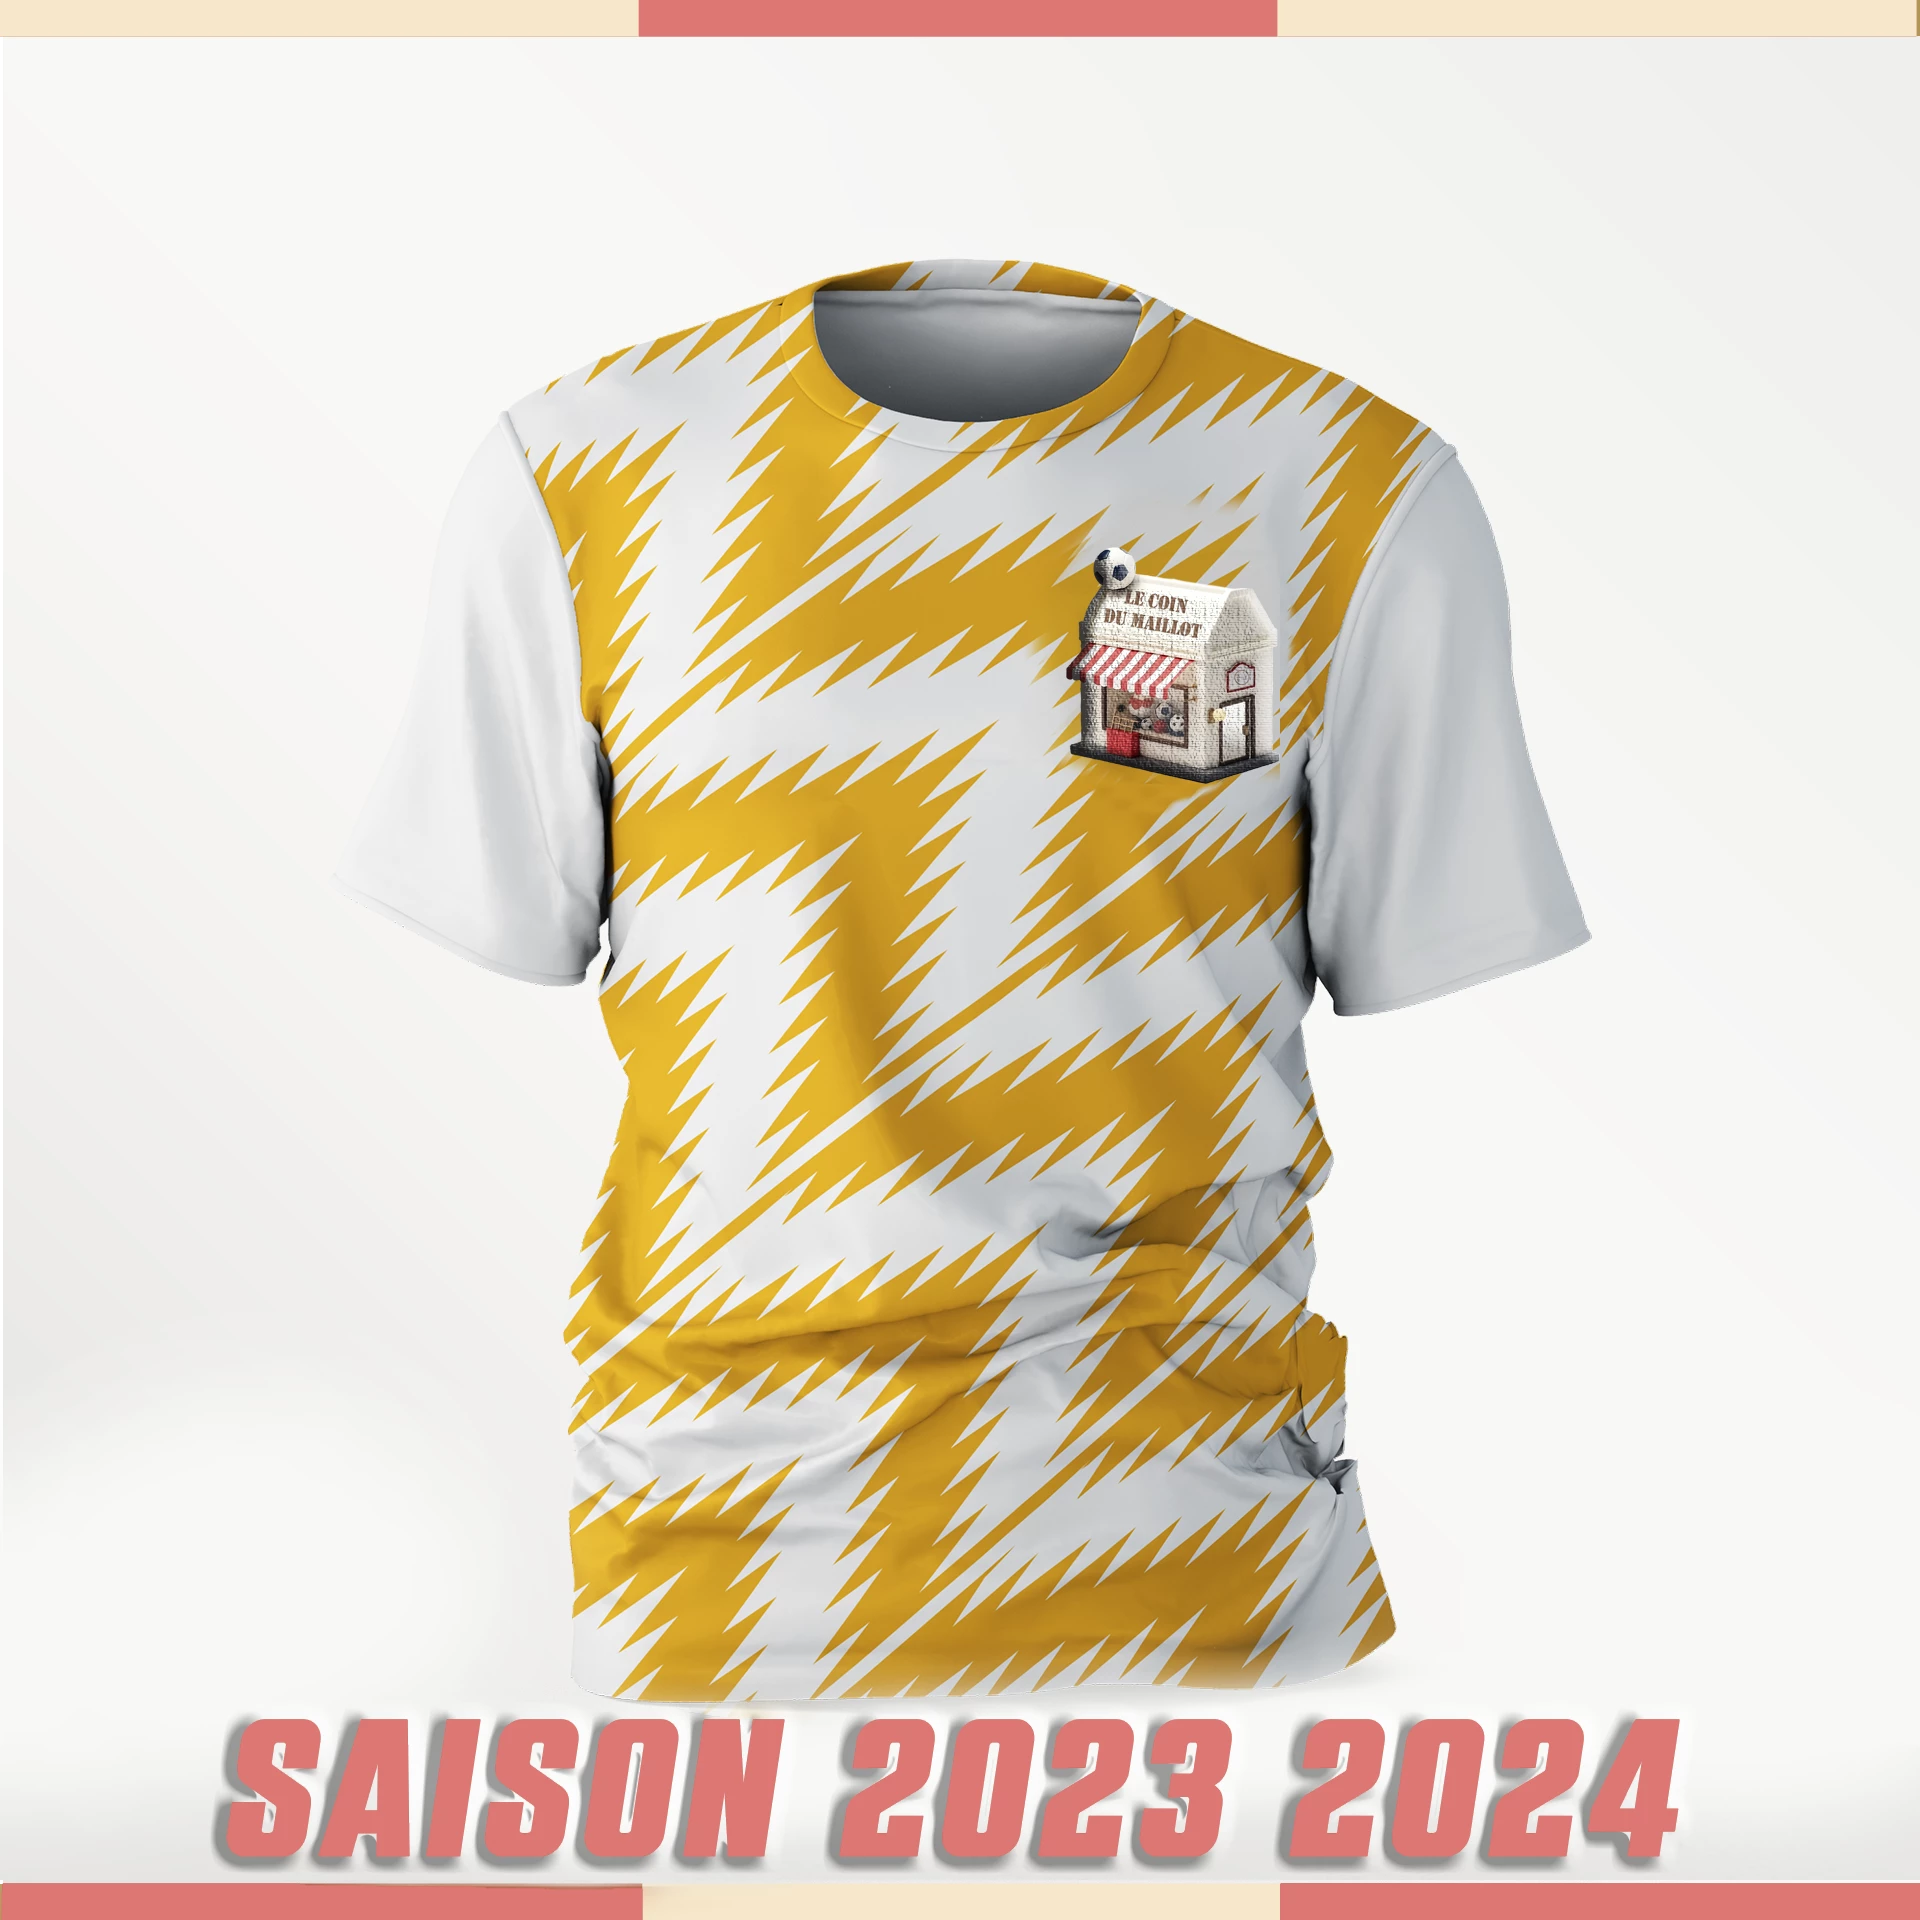 Les maillots de la saison 2023/2024